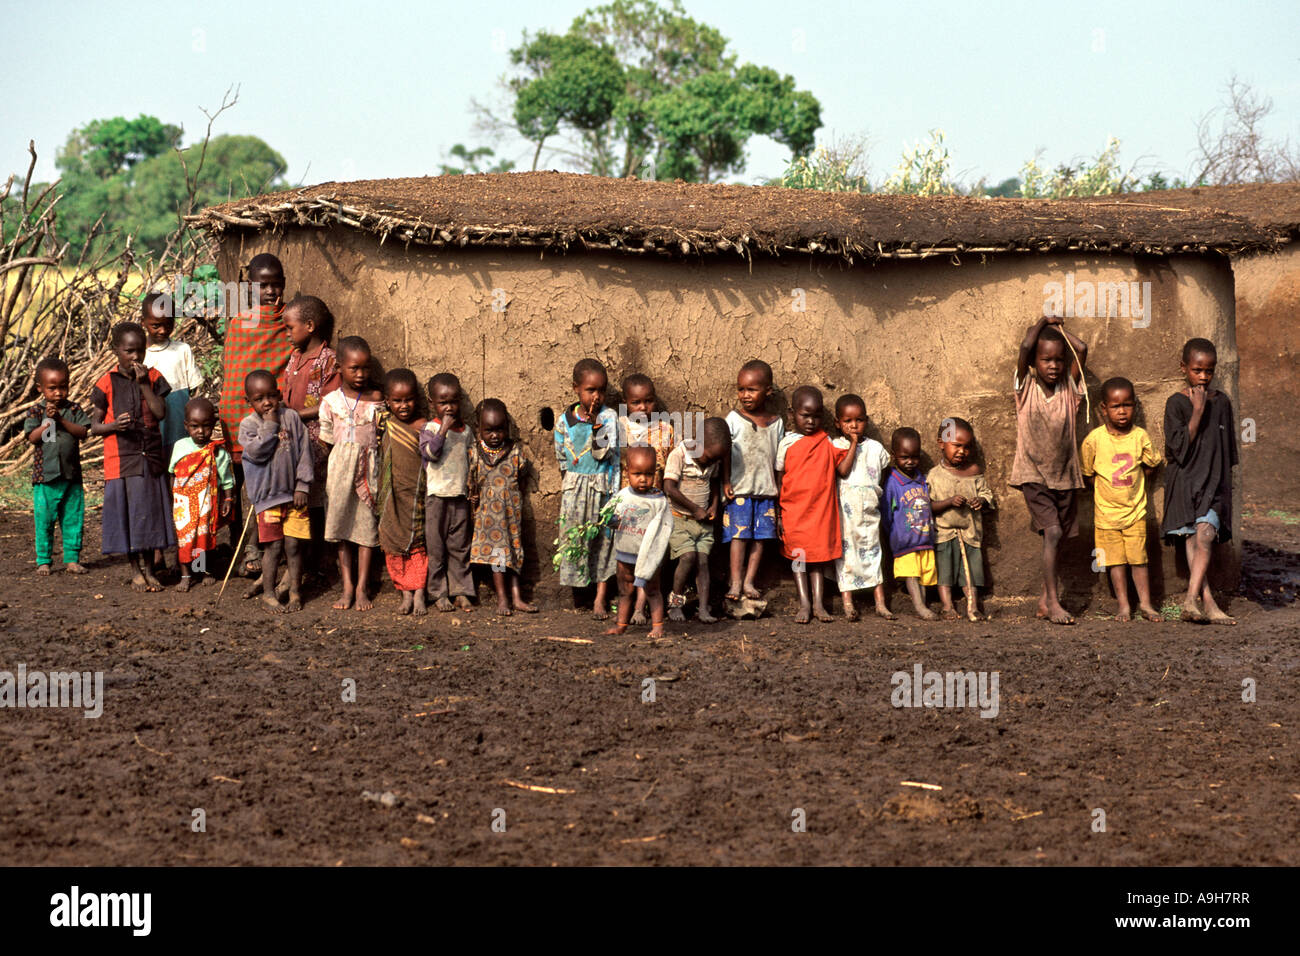 Un groupe d'enfants dans leur village Masai (appelé manyatta) dans le Masai Mara au Kenya. Banque D'Images